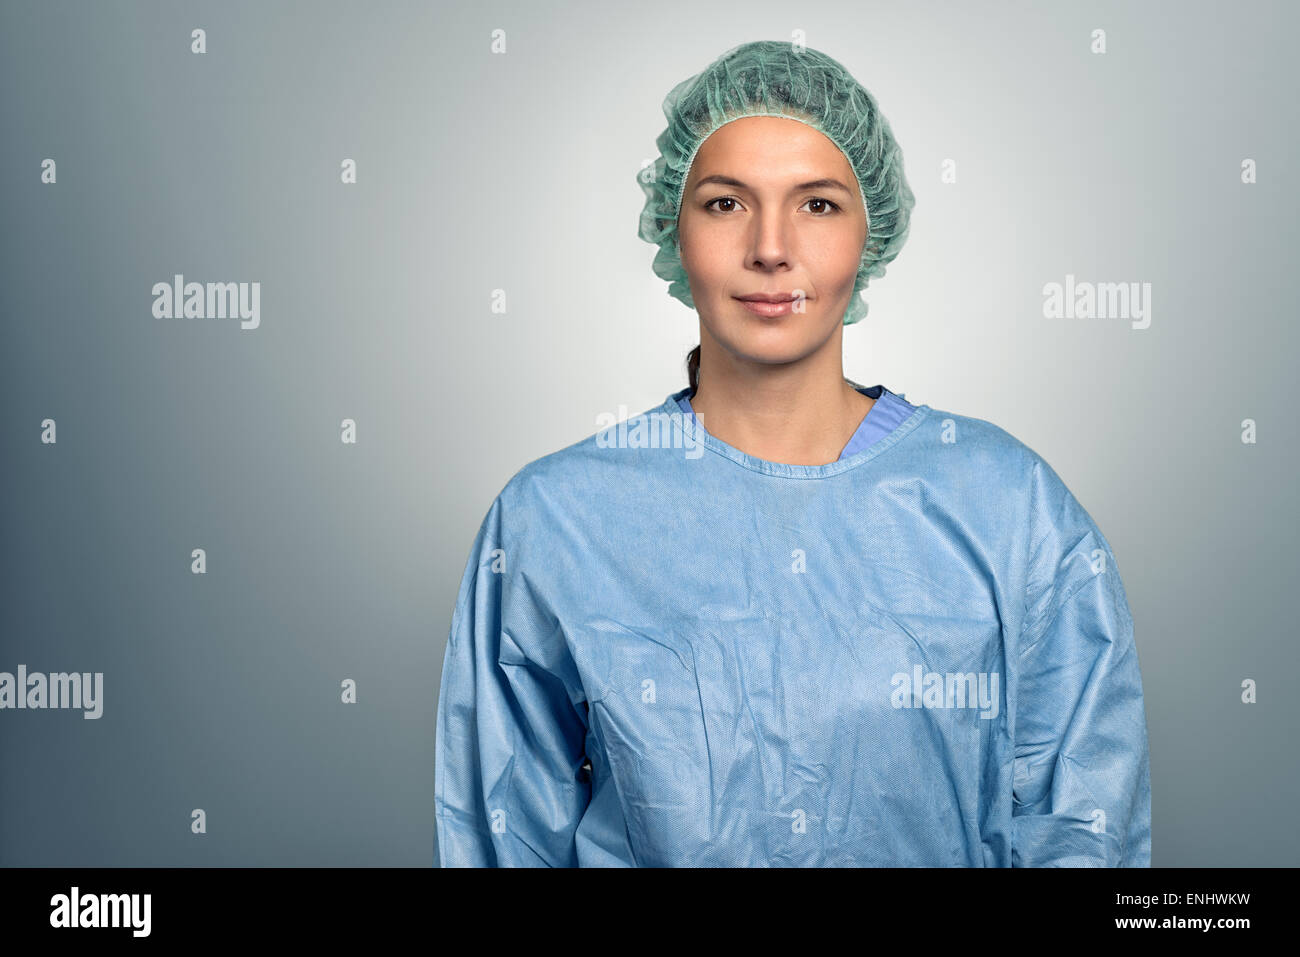 Attraktiven mittleren Alters Ärztin oder Krankenschwester in Peelings und eine Sterilität Kappe über grauen Hintergrund direkt in die Kamera schaut Stockfoto